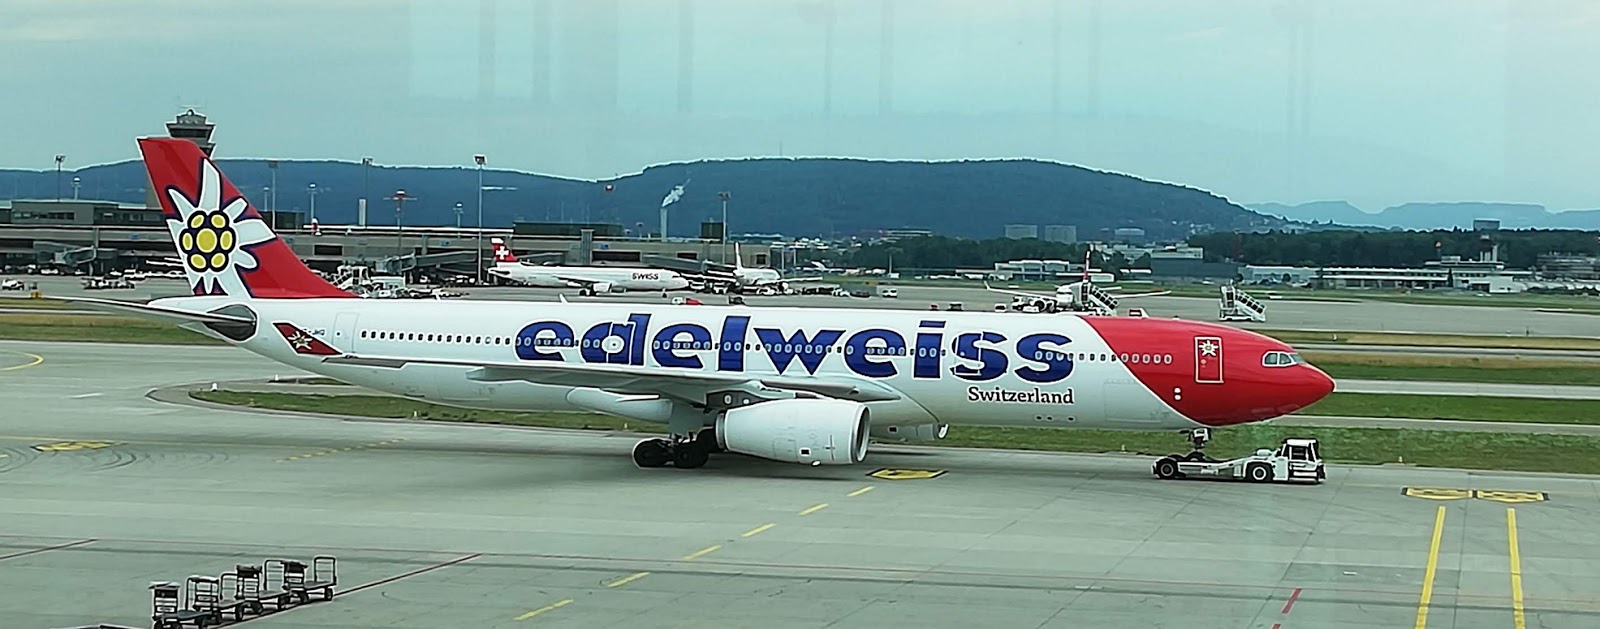 Wir sind noch nie mit Edelweiss Airline Direktflug Zürich Calgary geflogen weil se in der Vor und Nachsaison keine Flüge anbieten